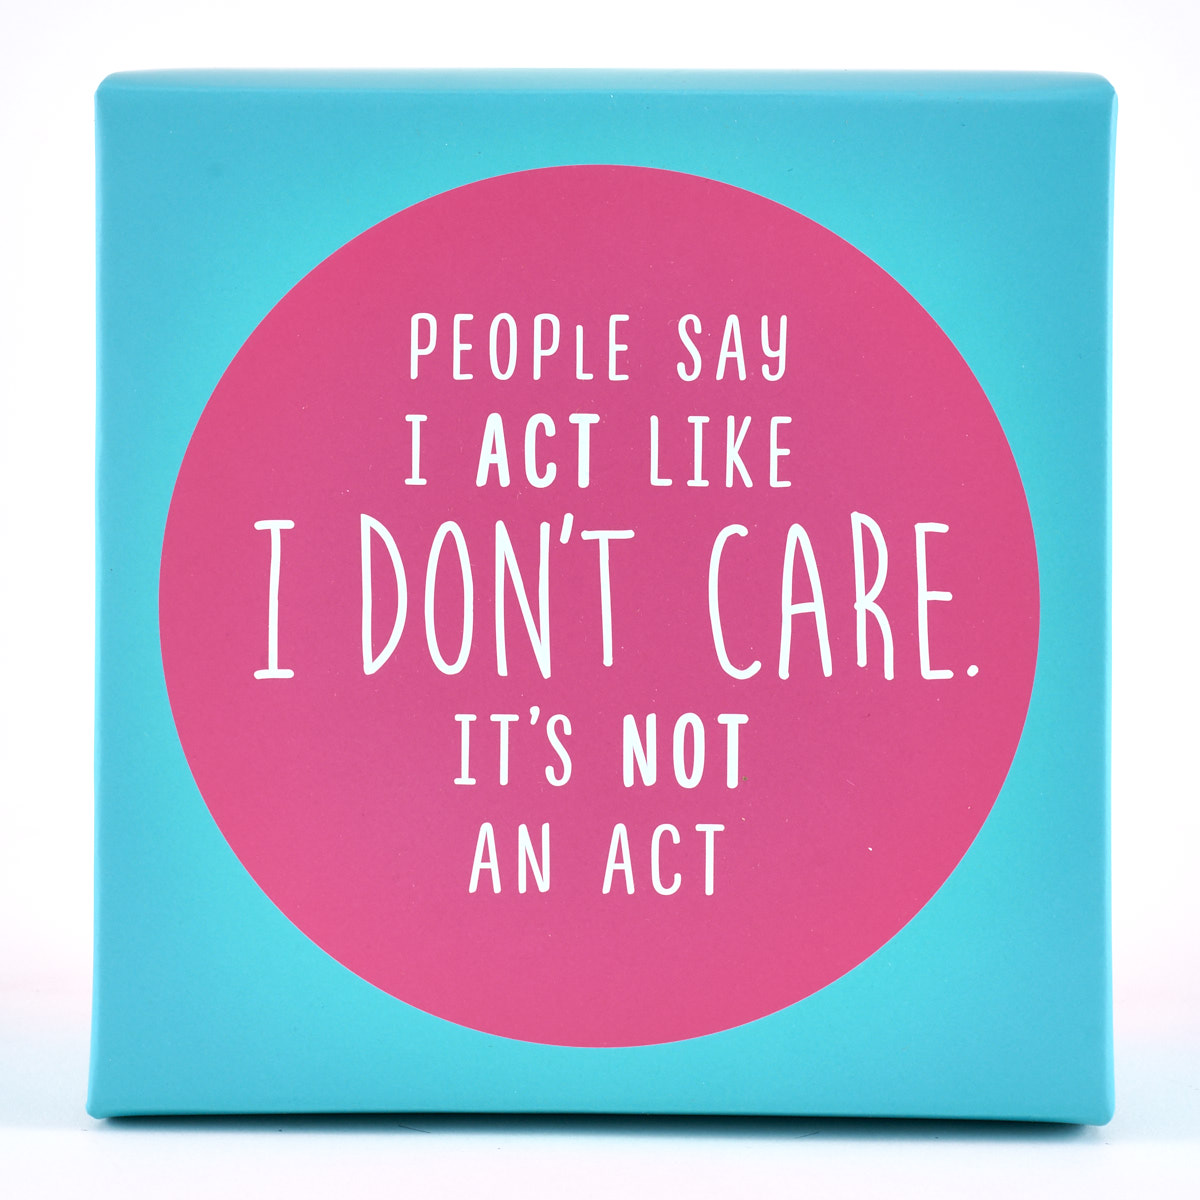 People Say I Act Like I Don't Care. It's Not An Act Mug